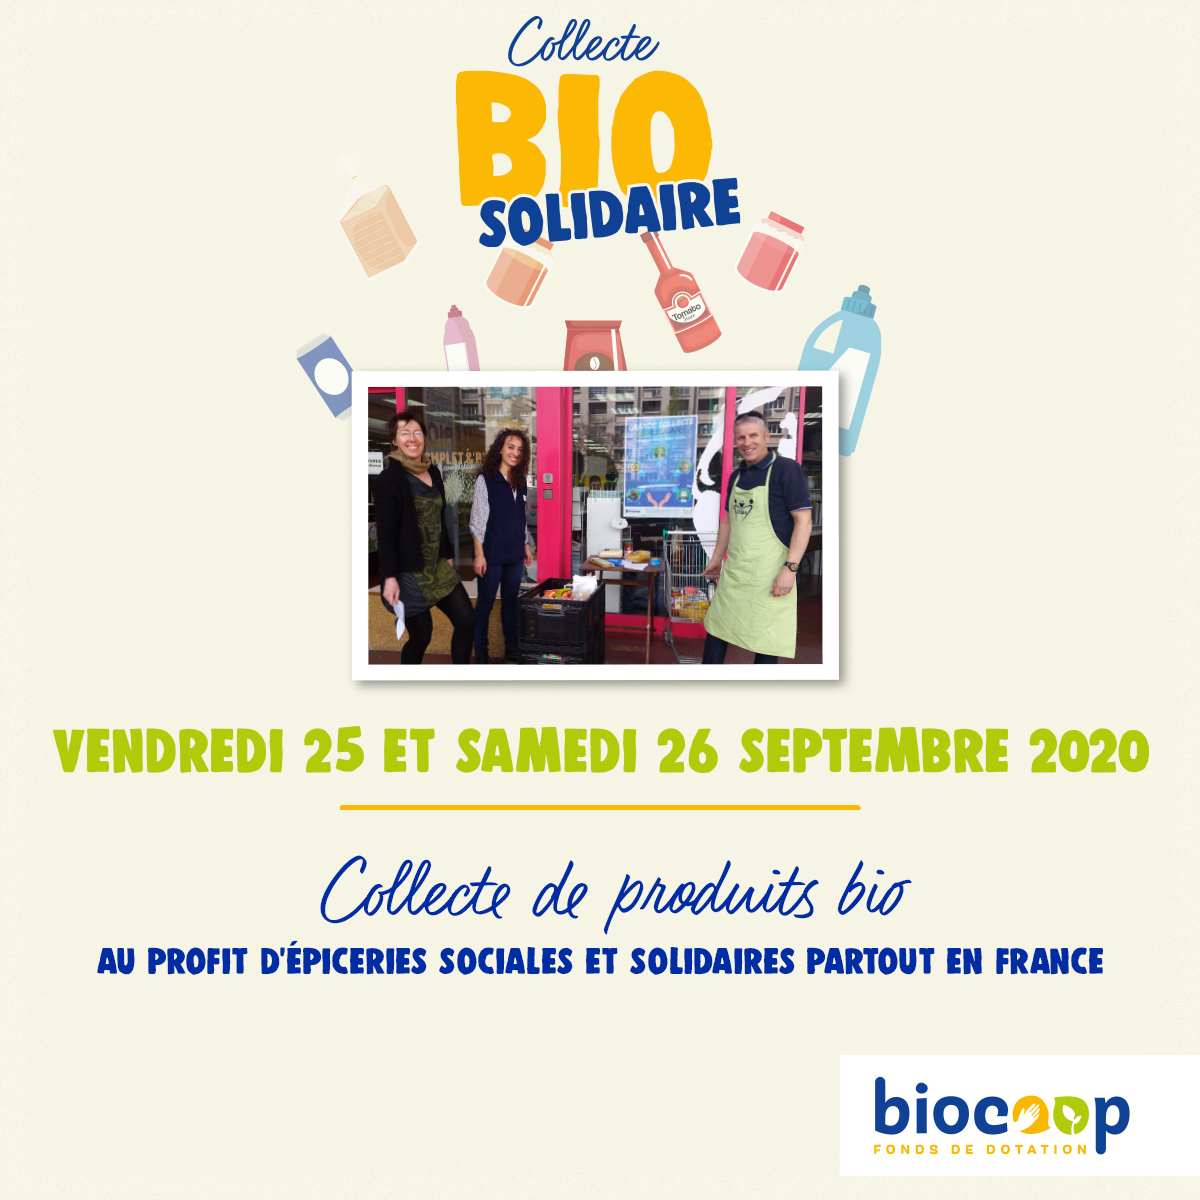 Collecte Bio Solidaire les 25 & 26 septembre au profit de L'Esperluette